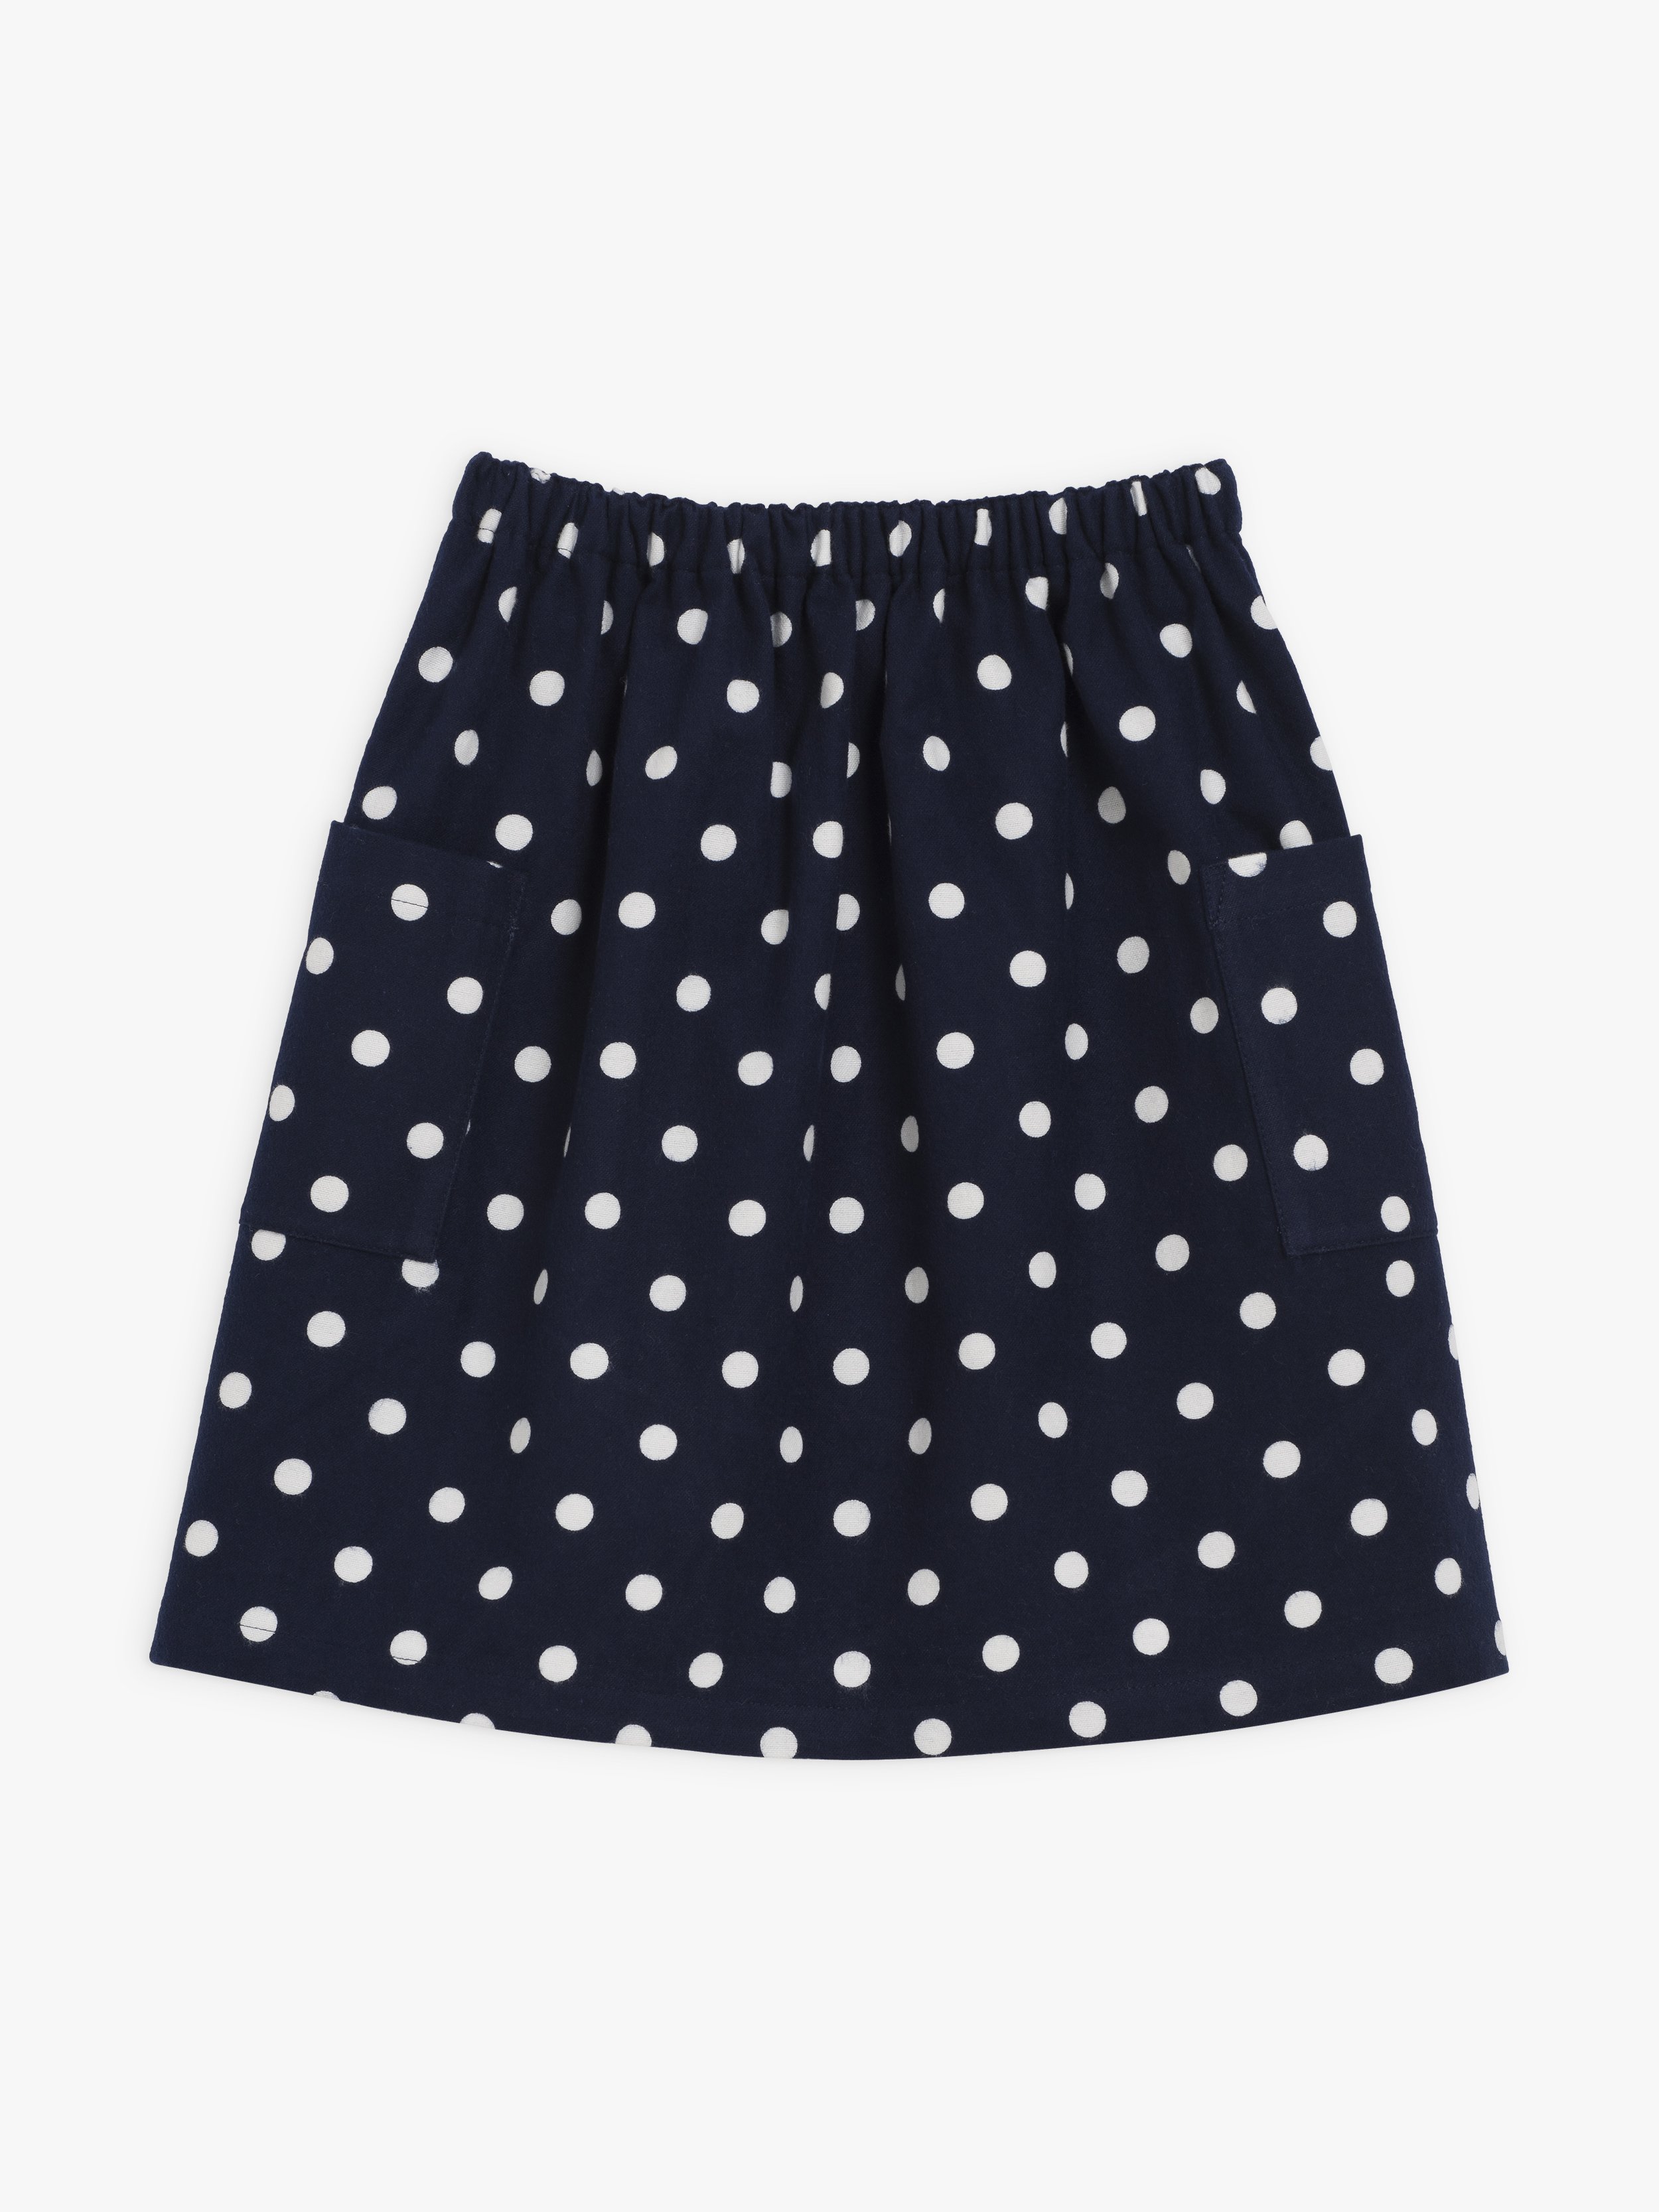 navy and white polka dot skirt